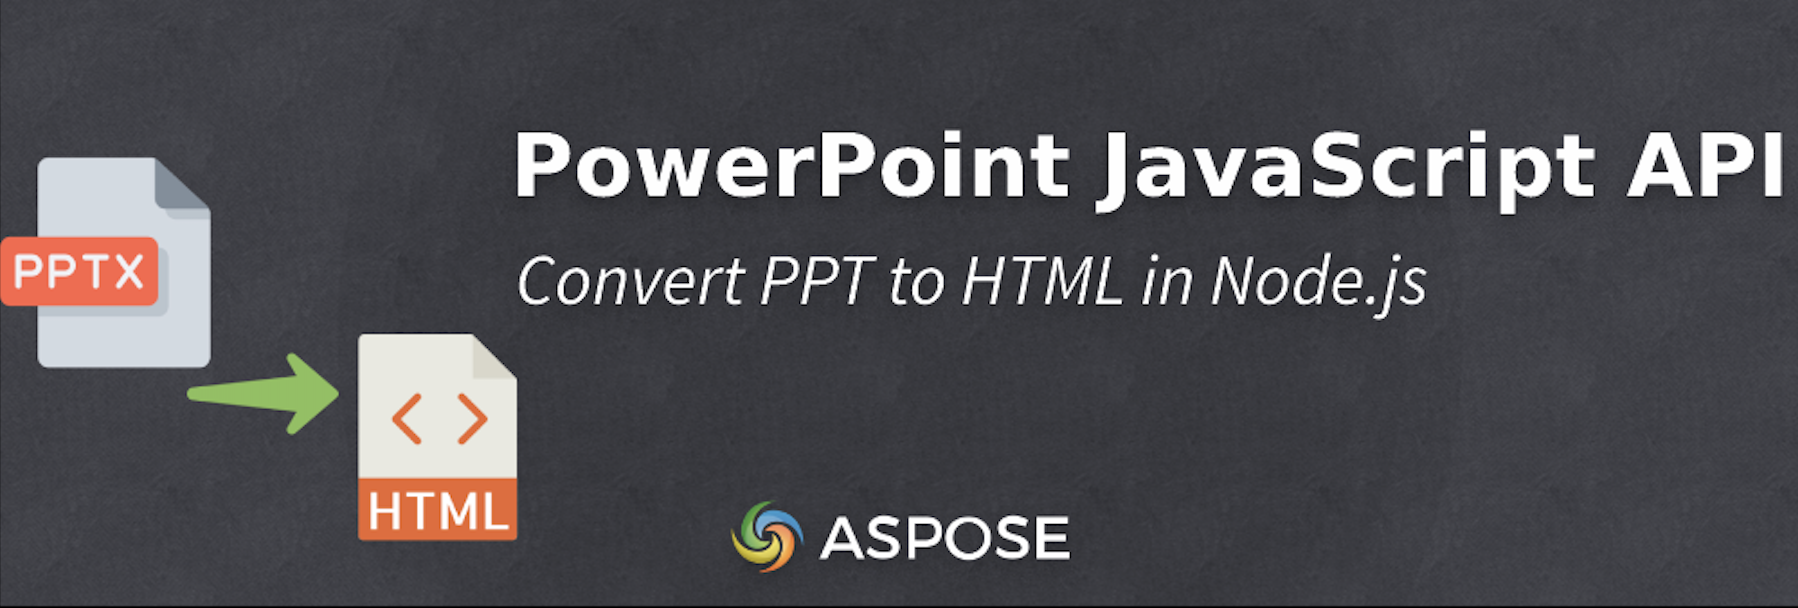 แปลง PPT เป็น HTML ใน Node.js - PowerPoint JavaScript API